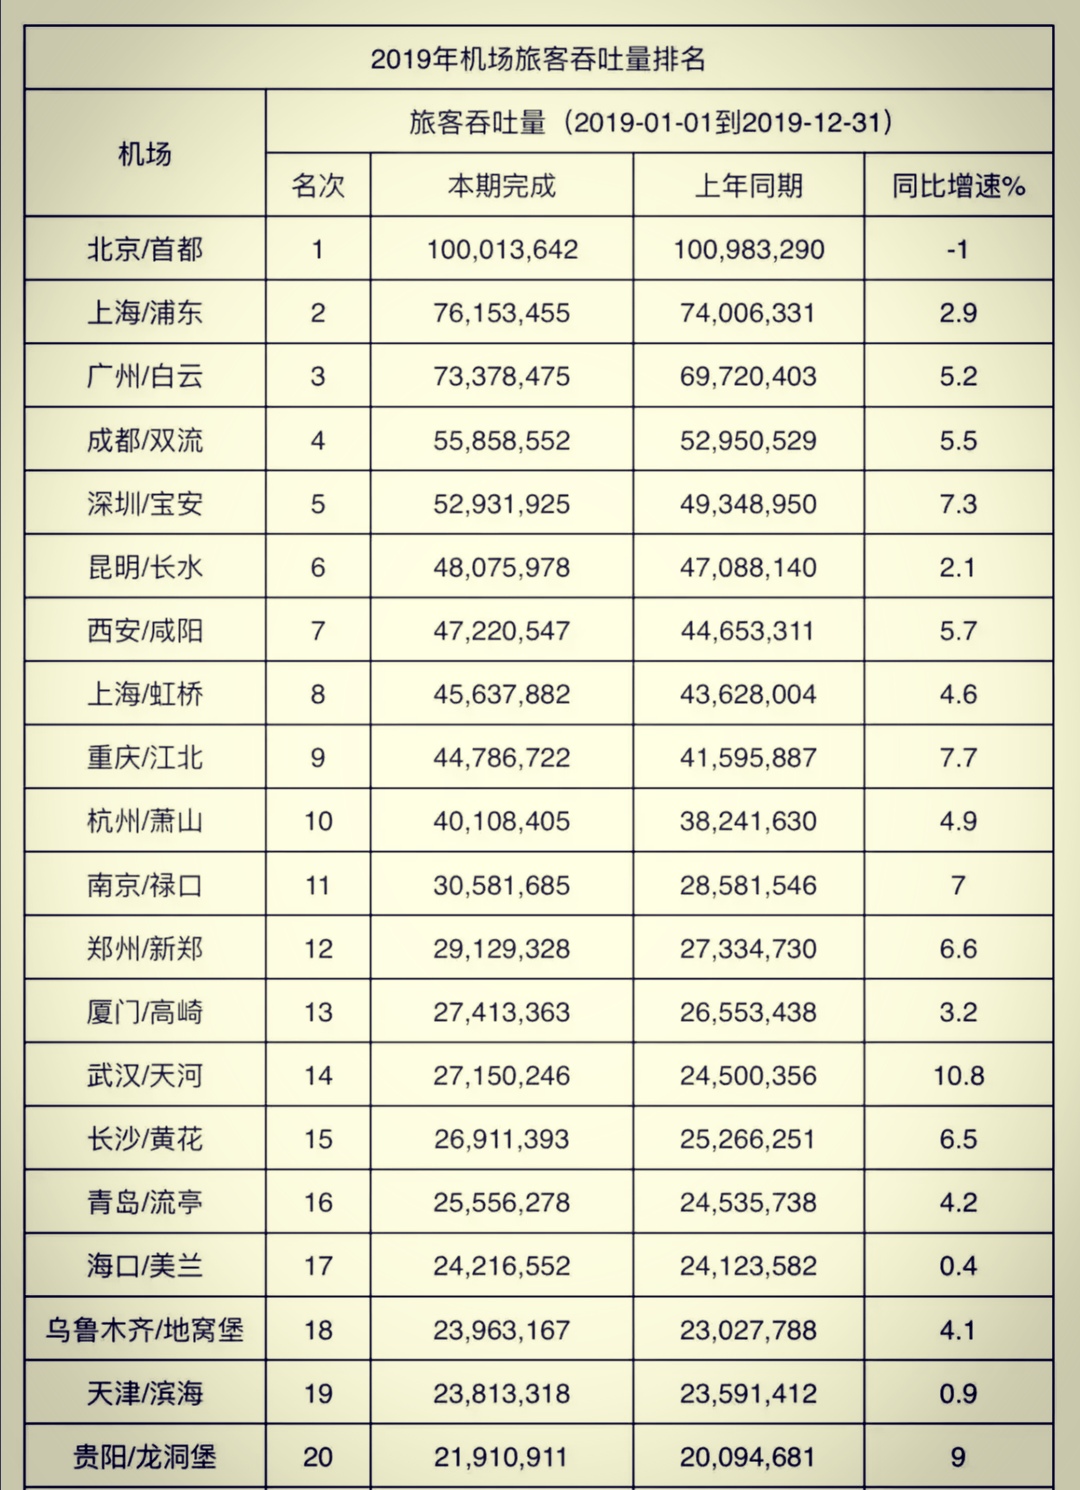 7月机场旅客吞吐量排名:广州第一,郑州冲进前十